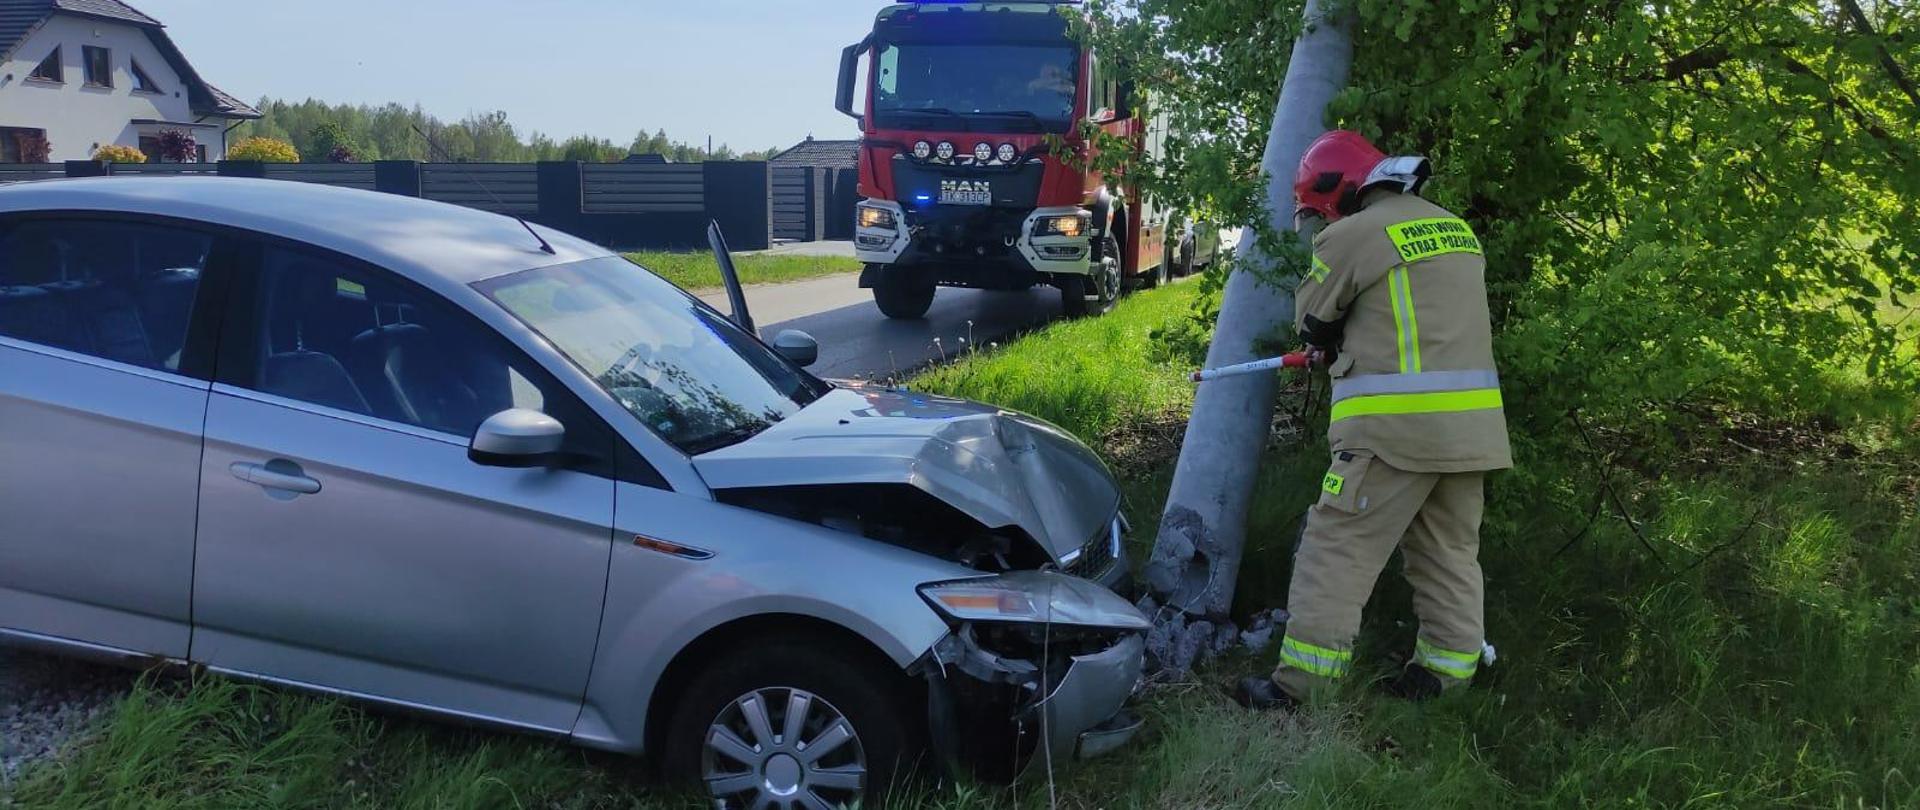 Zdjęcie przedstawia samochód osobowy stojący w rowie przodem oparty o betonowy słup. Zniszczony jest zarówno przód auta jak i słup oświetleniowy, w którym strażak detektorem sprawdza napięcie. W tle widać samochód pożarniczy.